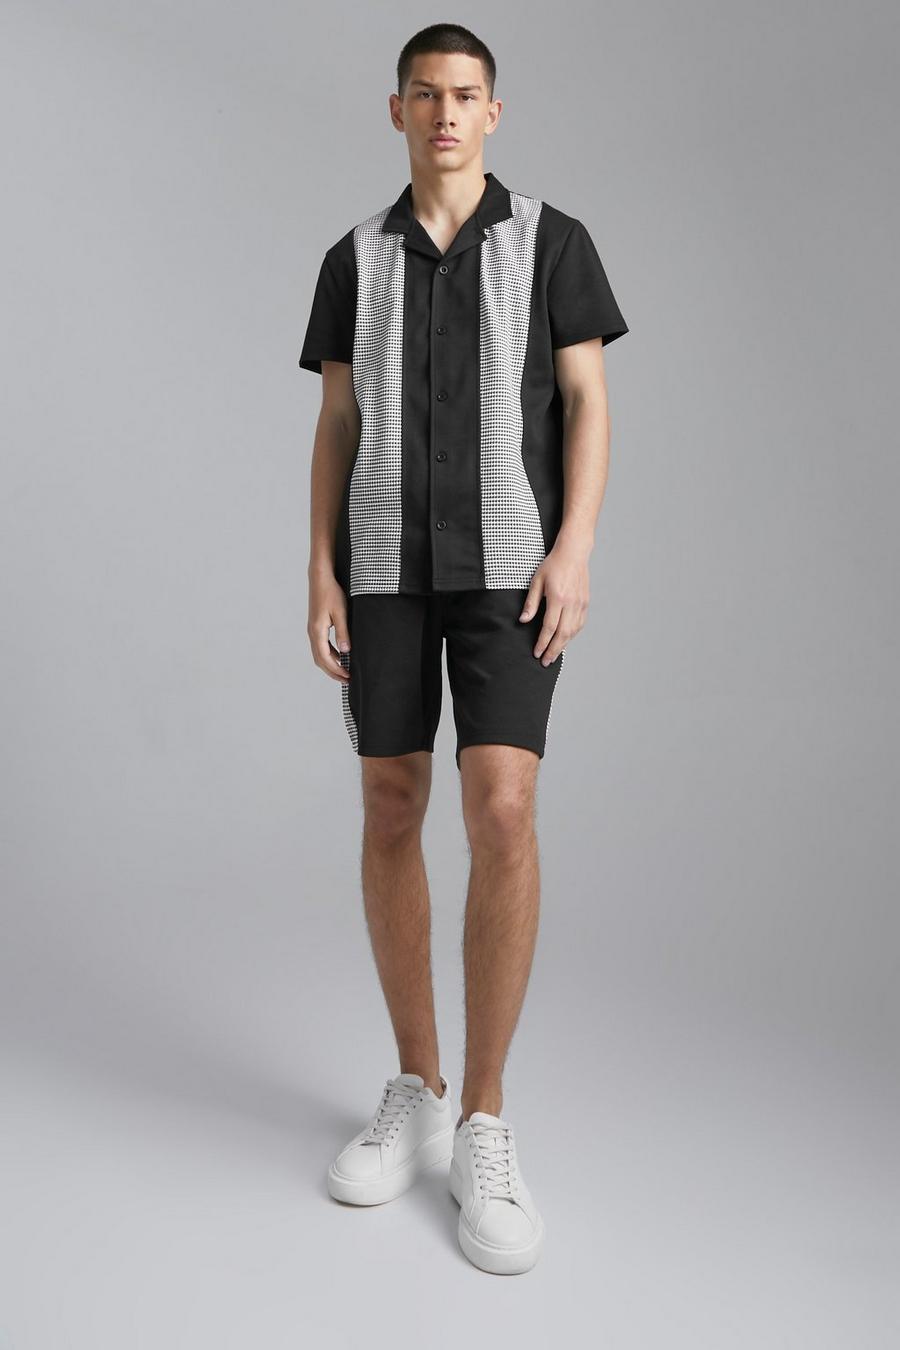 Black Jacquard Panel Revere Shirt And Shorts